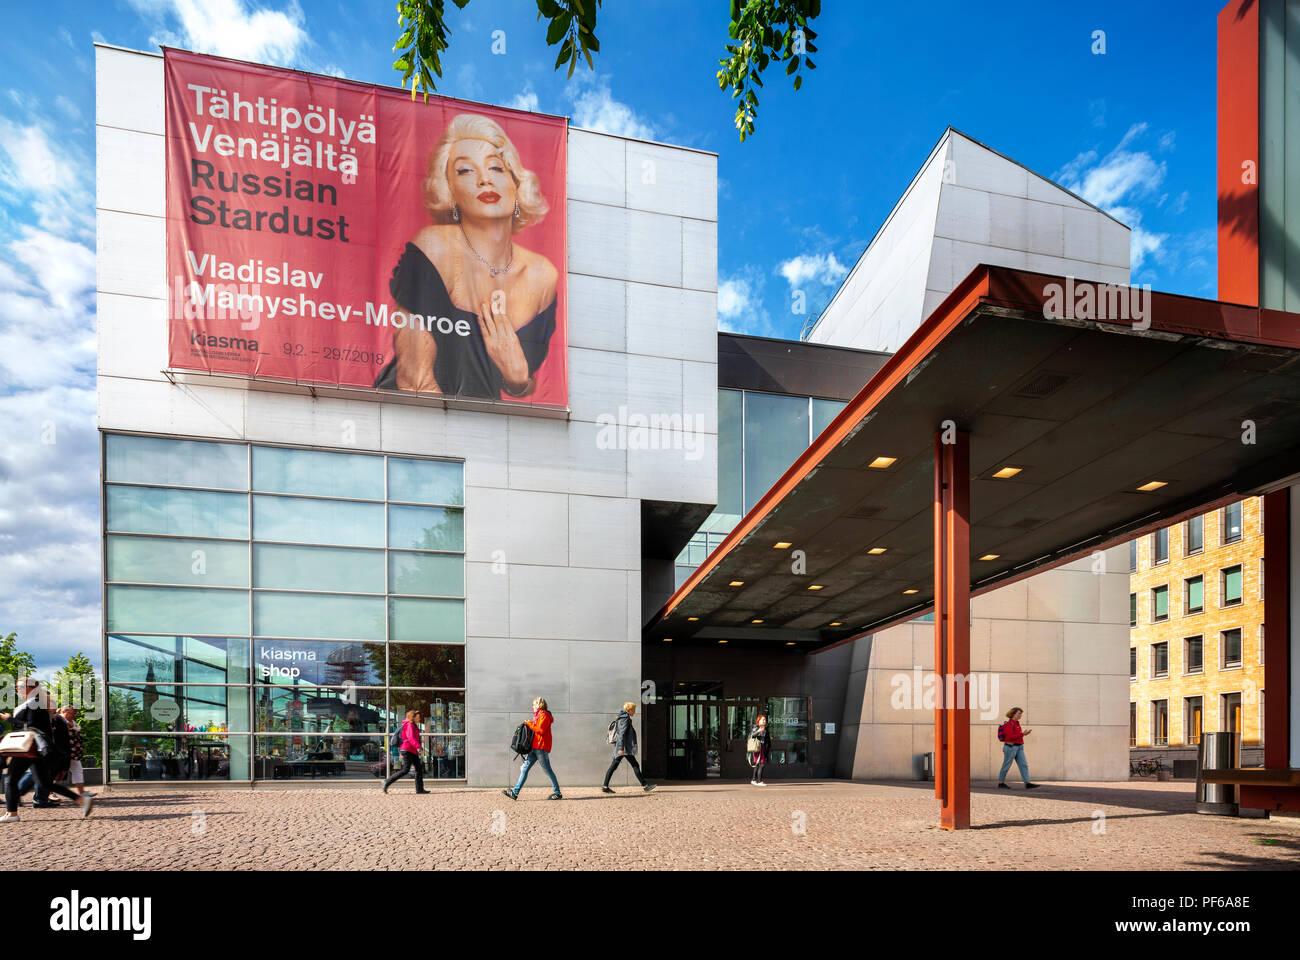 Musée Kiasma d'Helsinki de l'Art Contemporain avec entrée extérieure et la boutique du musée Kiasma et musée du café sur la gauche. Banque D'Images